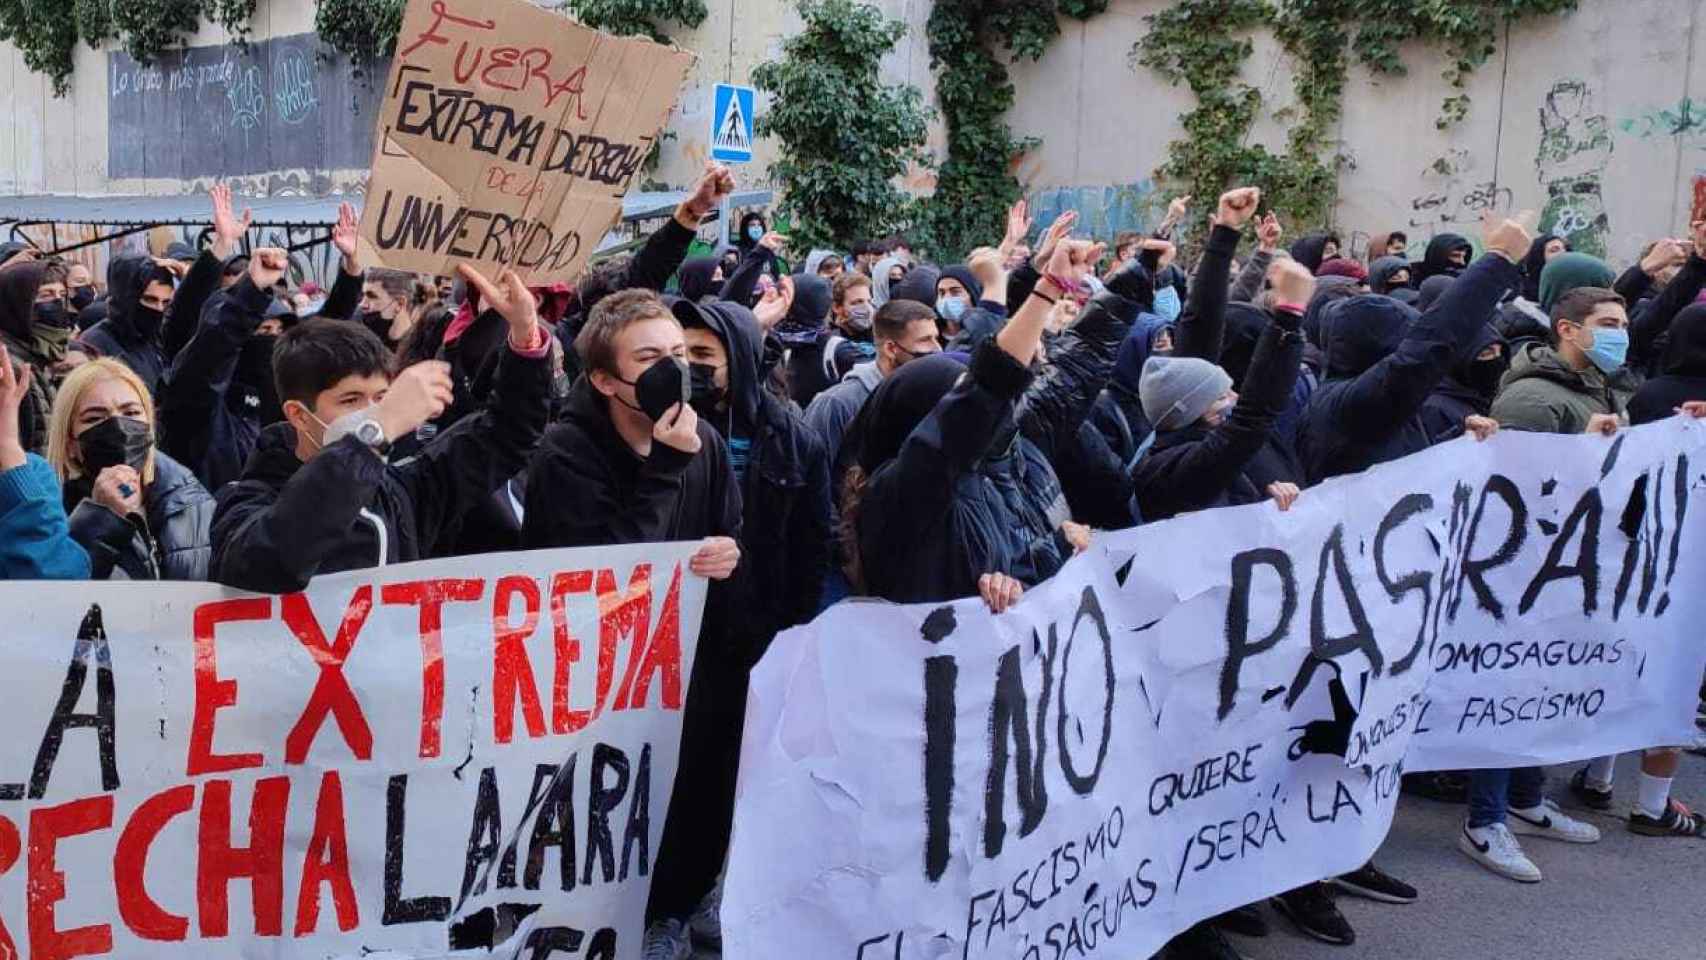 La estudiantes de izquierdas impidiendo el paso del Ortega Smith y el grupo de derecha radical.